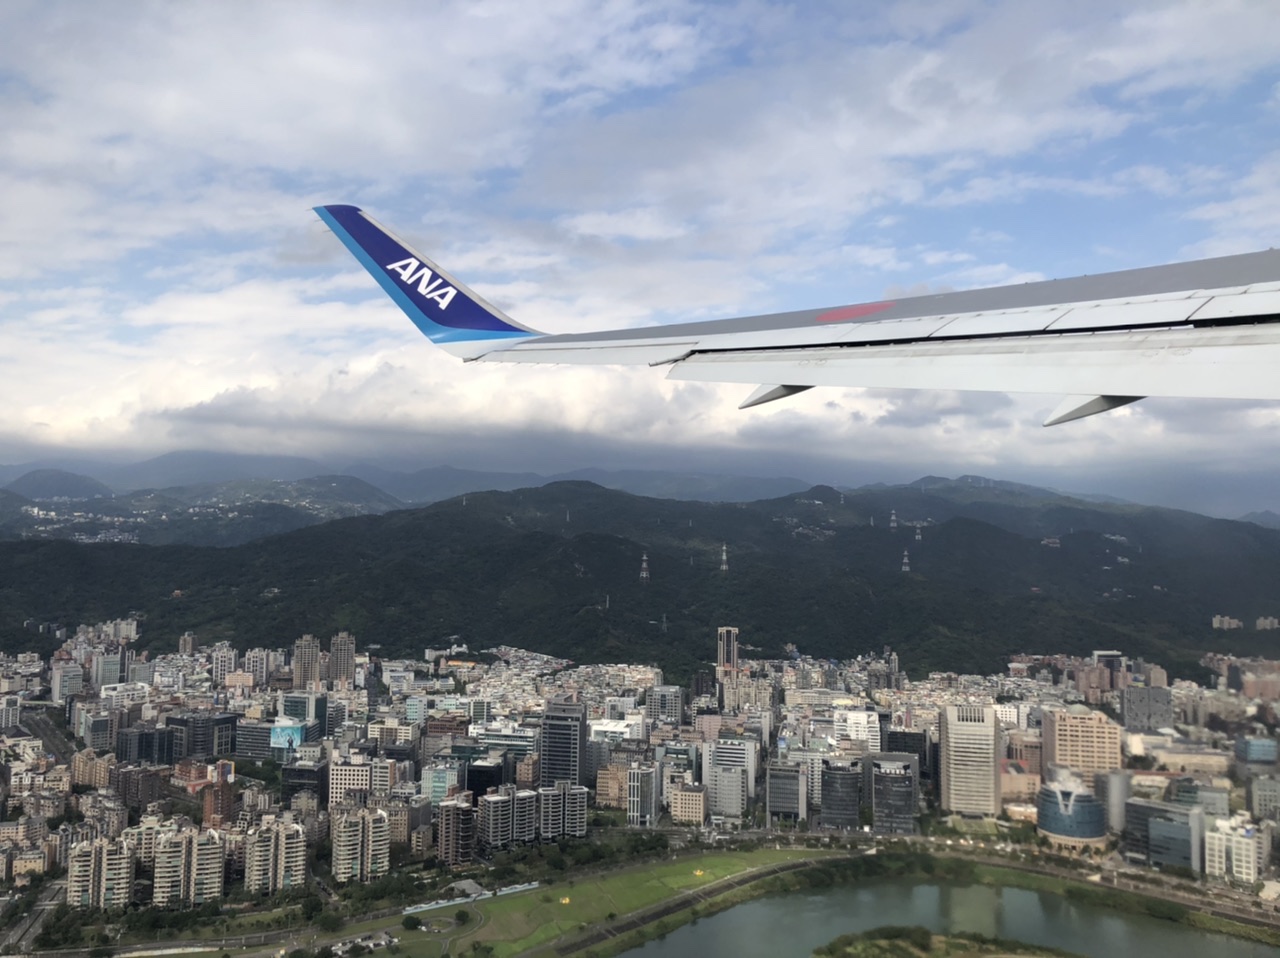 搭乗記 Ana Nh852 台北松山空港 羽田空港 コロナ禍でのフライト 日本一時帰国の様子